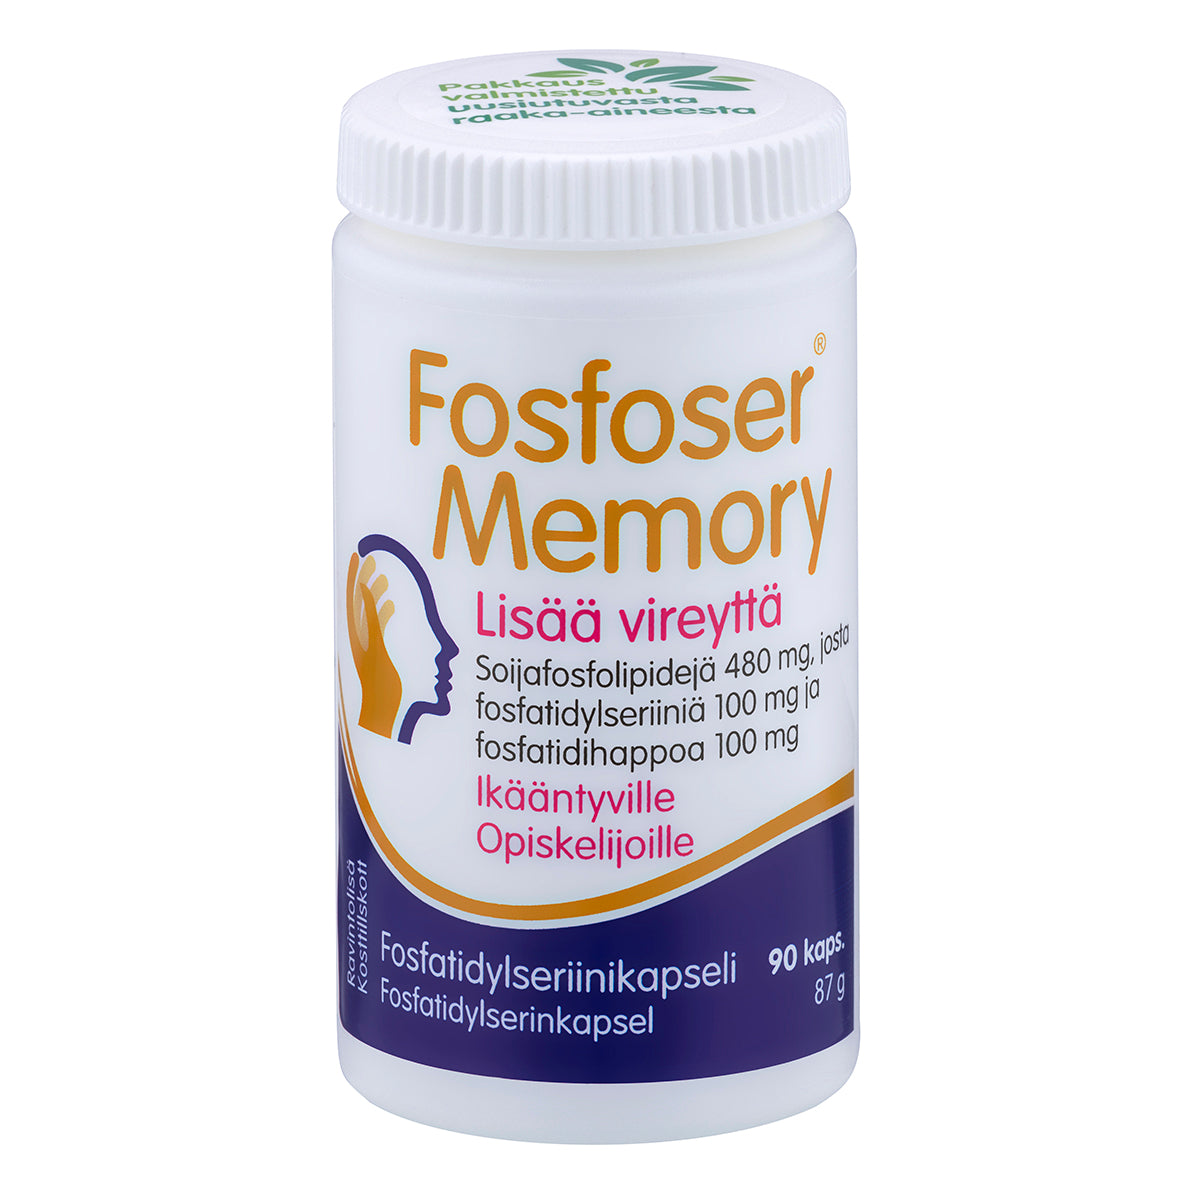 Fosfoser Memory-Hankintatukku-Hyvinvoinnin Tavaratalo